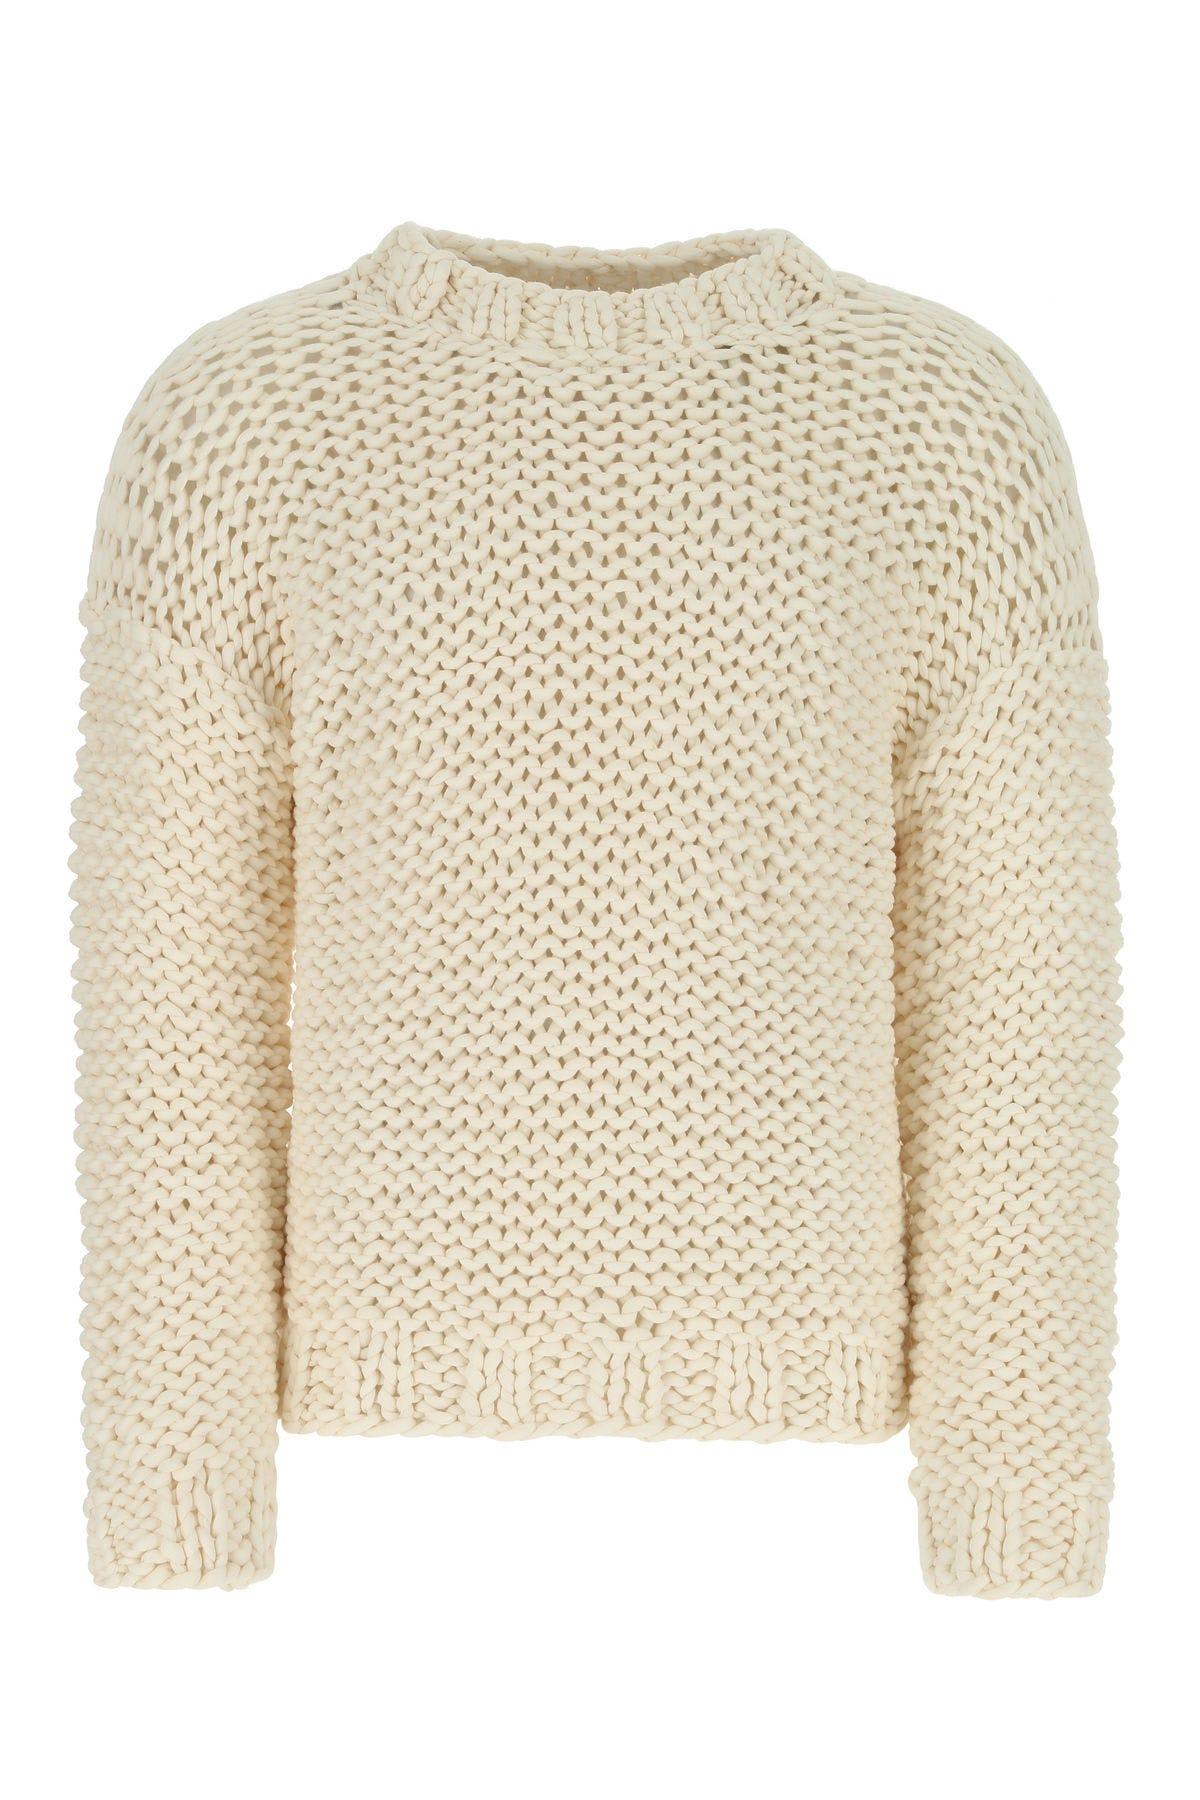 Koché Ivory Cotton Blend Sweater